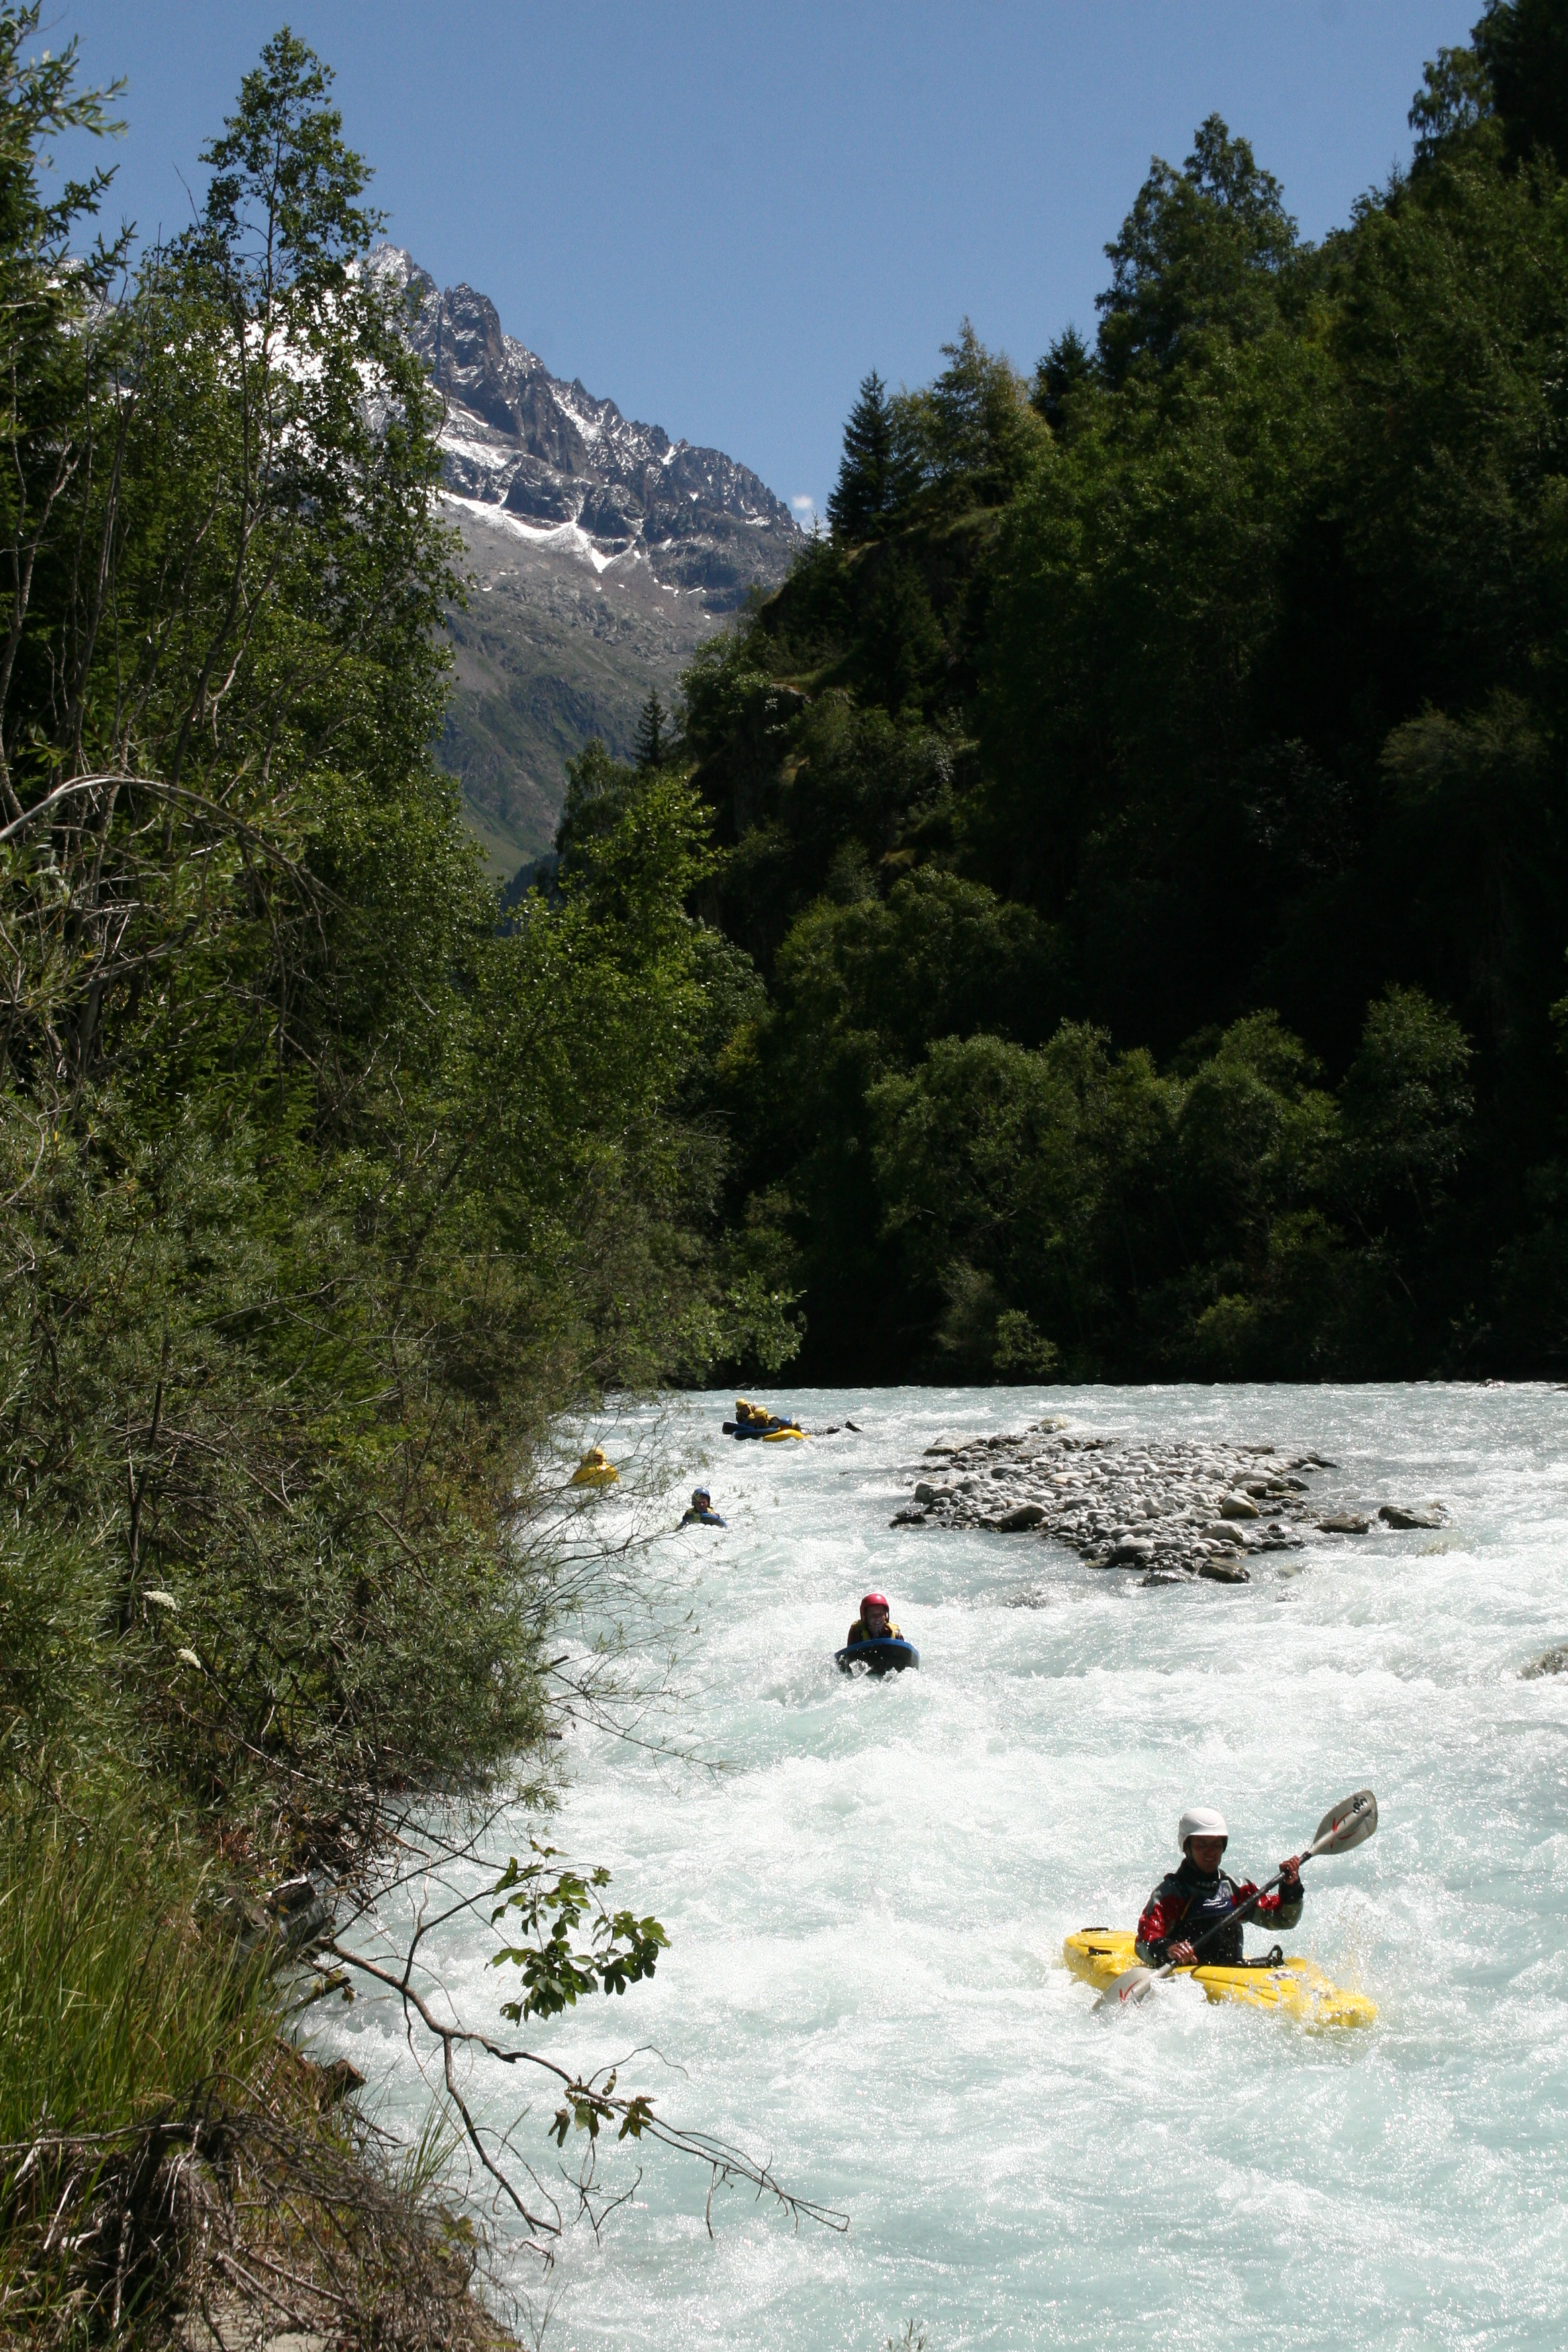 Kayaking rapids